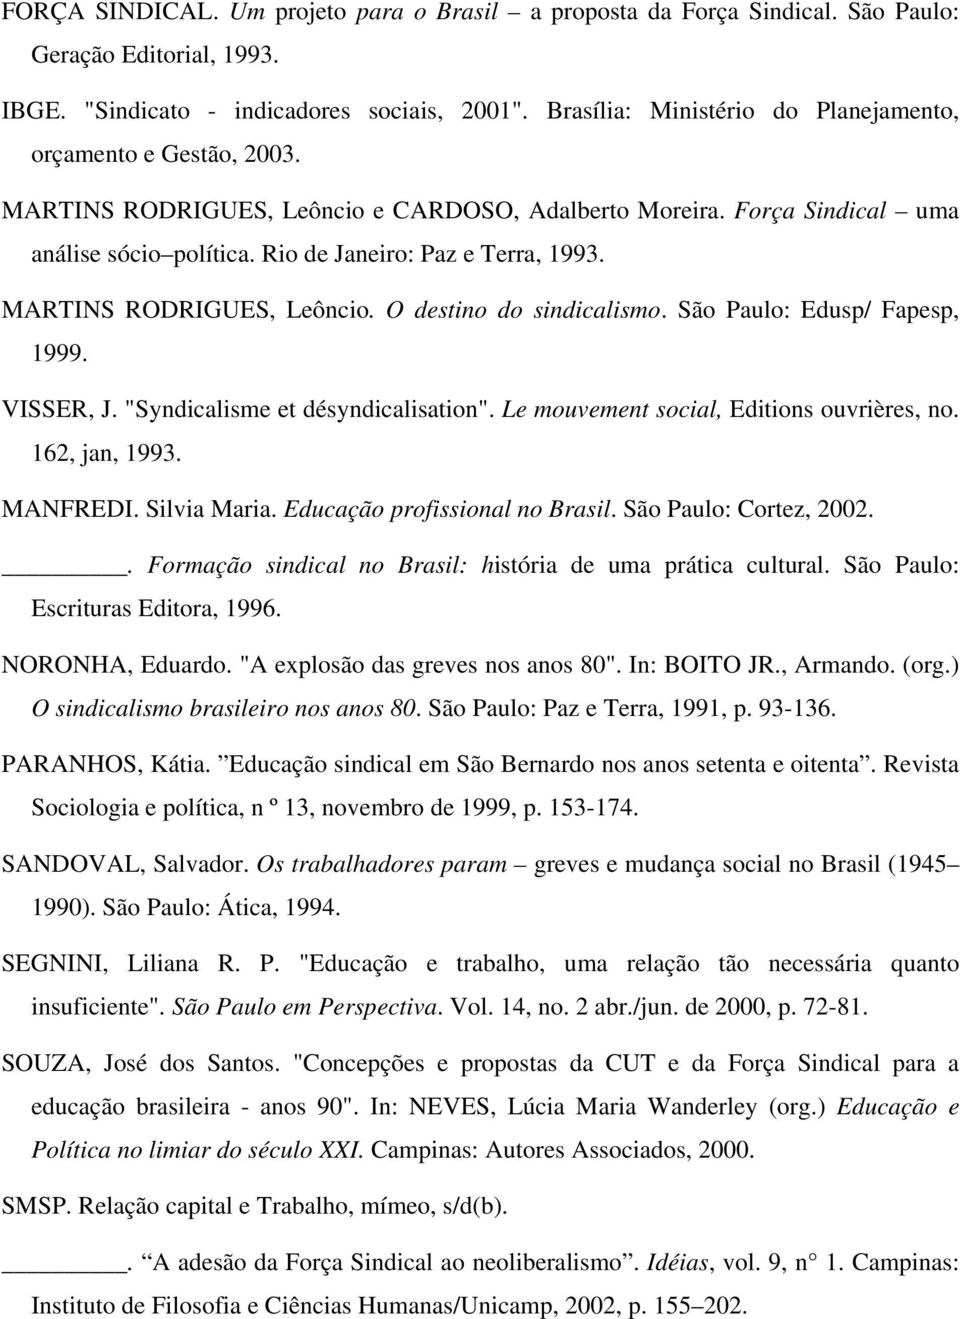 MARTINS RODRIGUES, Leôncio. O destino do sindicalismo. São Paulo: Edusp/ Fapesp, 1999. VISSER, J. "Syndicalisme et désyndicalisation". Le mouvement social, Editions ouvrières, no. 162, jan, 1993.